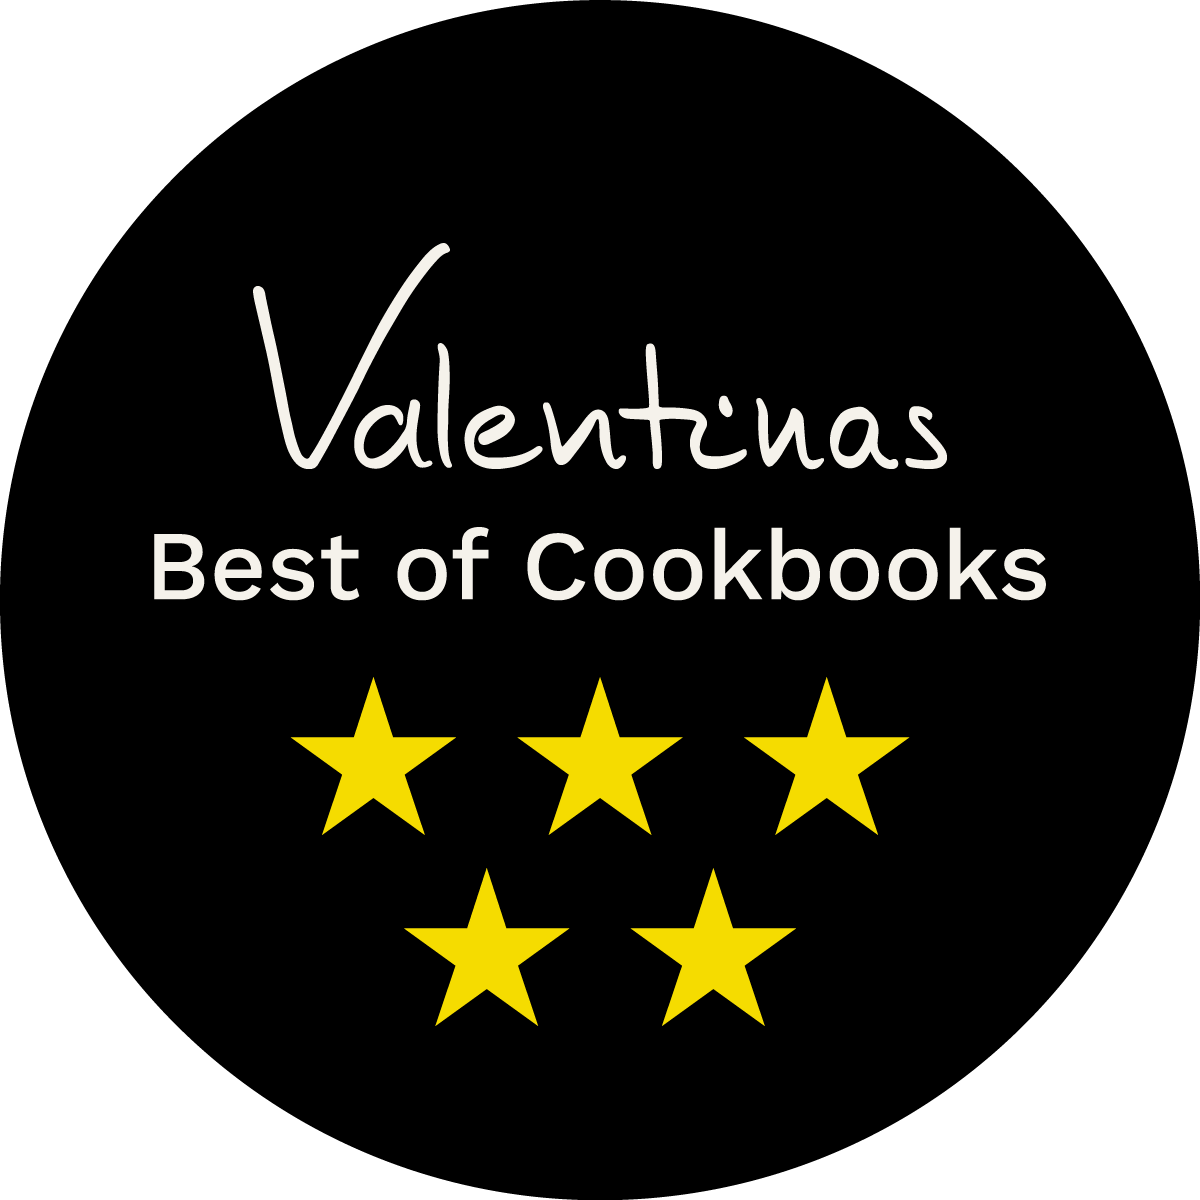 Badge: Aufschrift 'Valentinas Best of Cookbooks' und fünf gelbe Sterne auf rundem, schwarzem Hintergrund